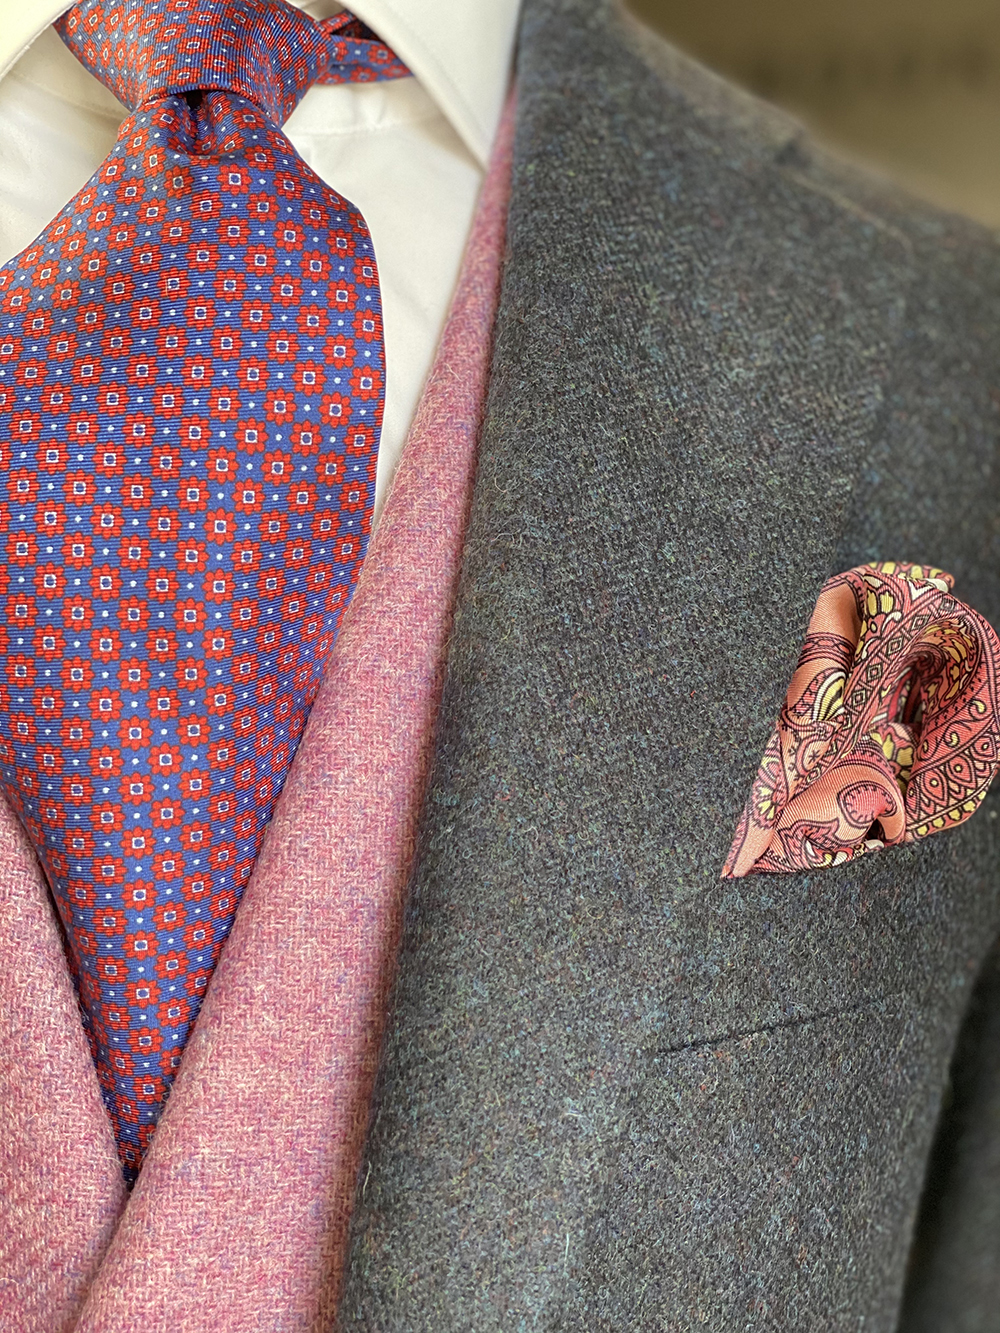 Andrew Brookes Wedding Suit Pink Tie